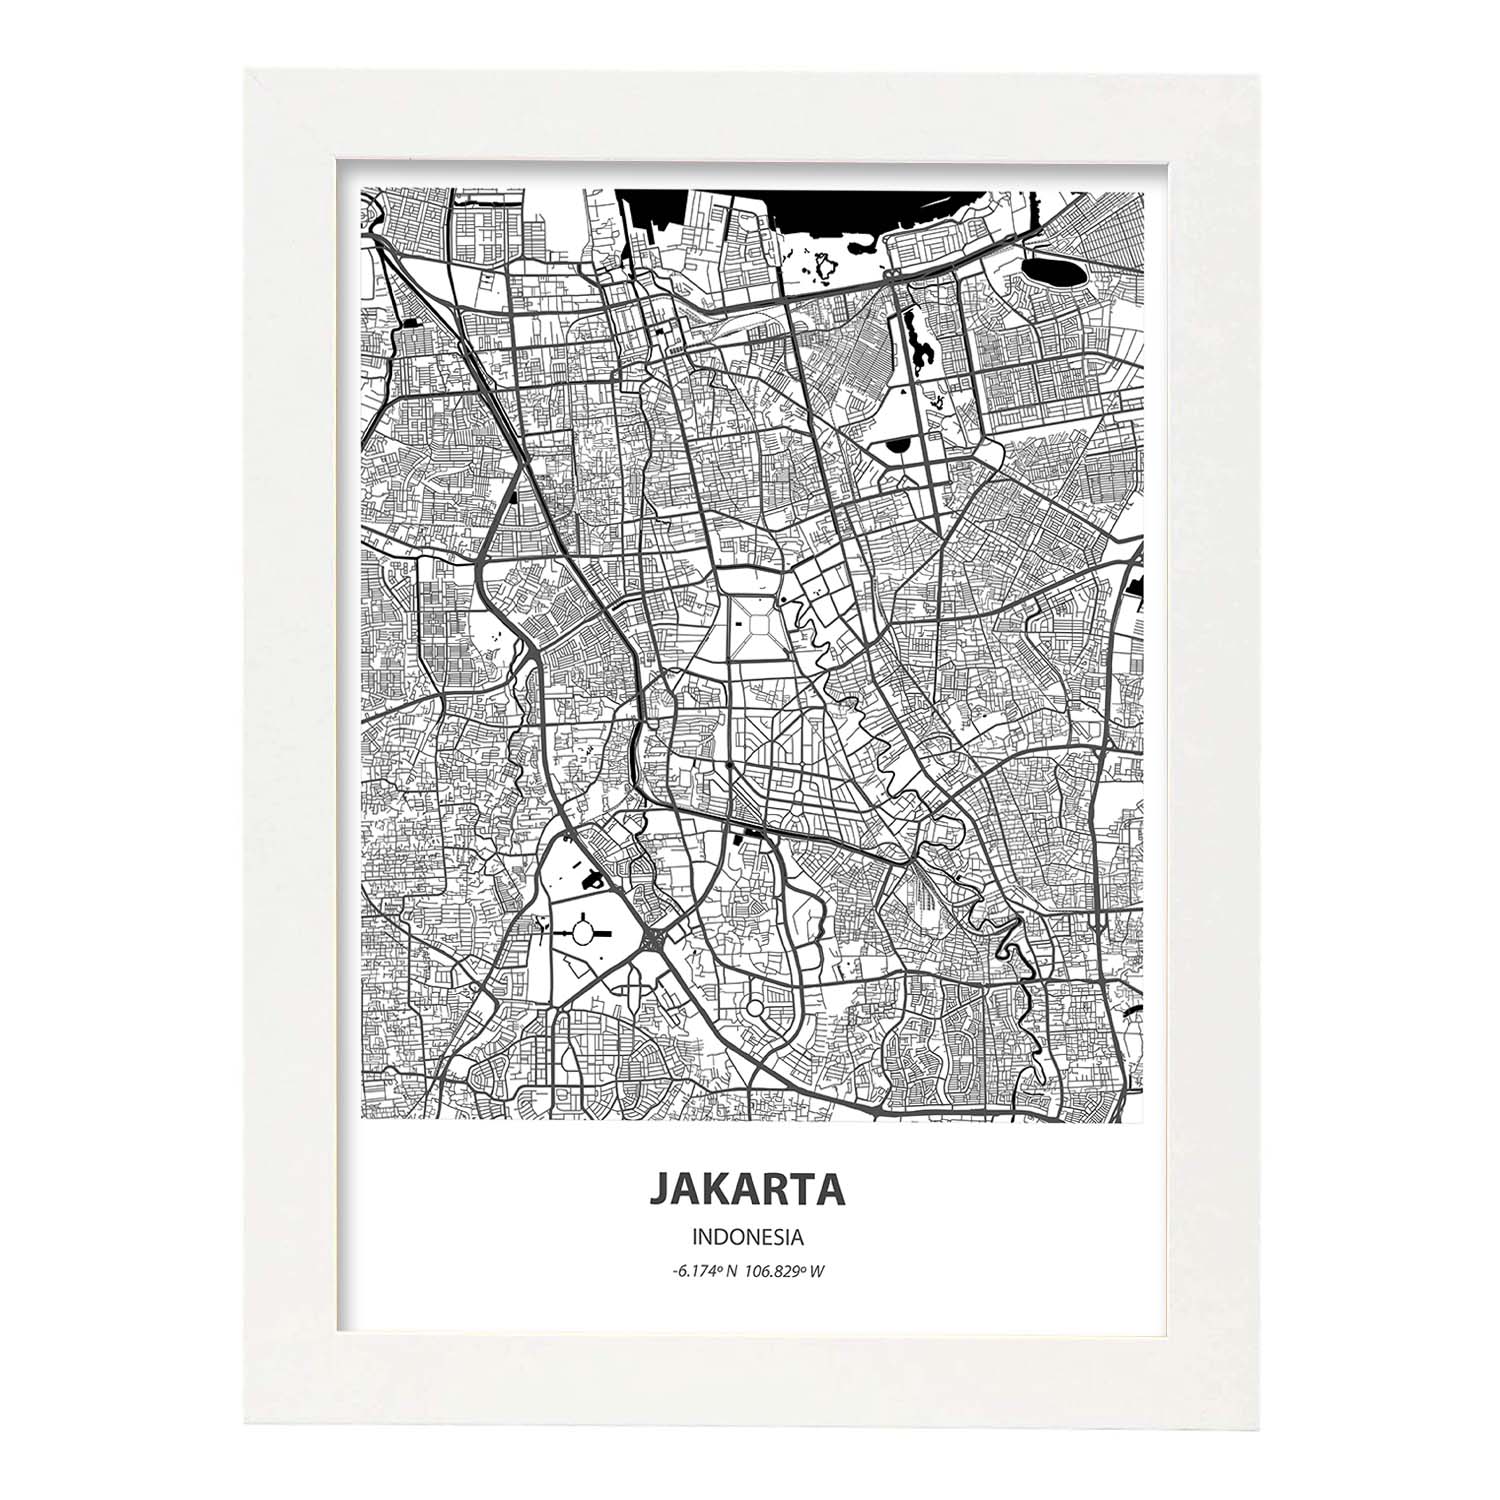 Poster con mapa de Jakarta - Indonesia. Láminas de ciudades de Asia con mares y ríos en color negro.-Artwork-Nacnic-A4-Marco Blanco-Nacnic Estudio SL